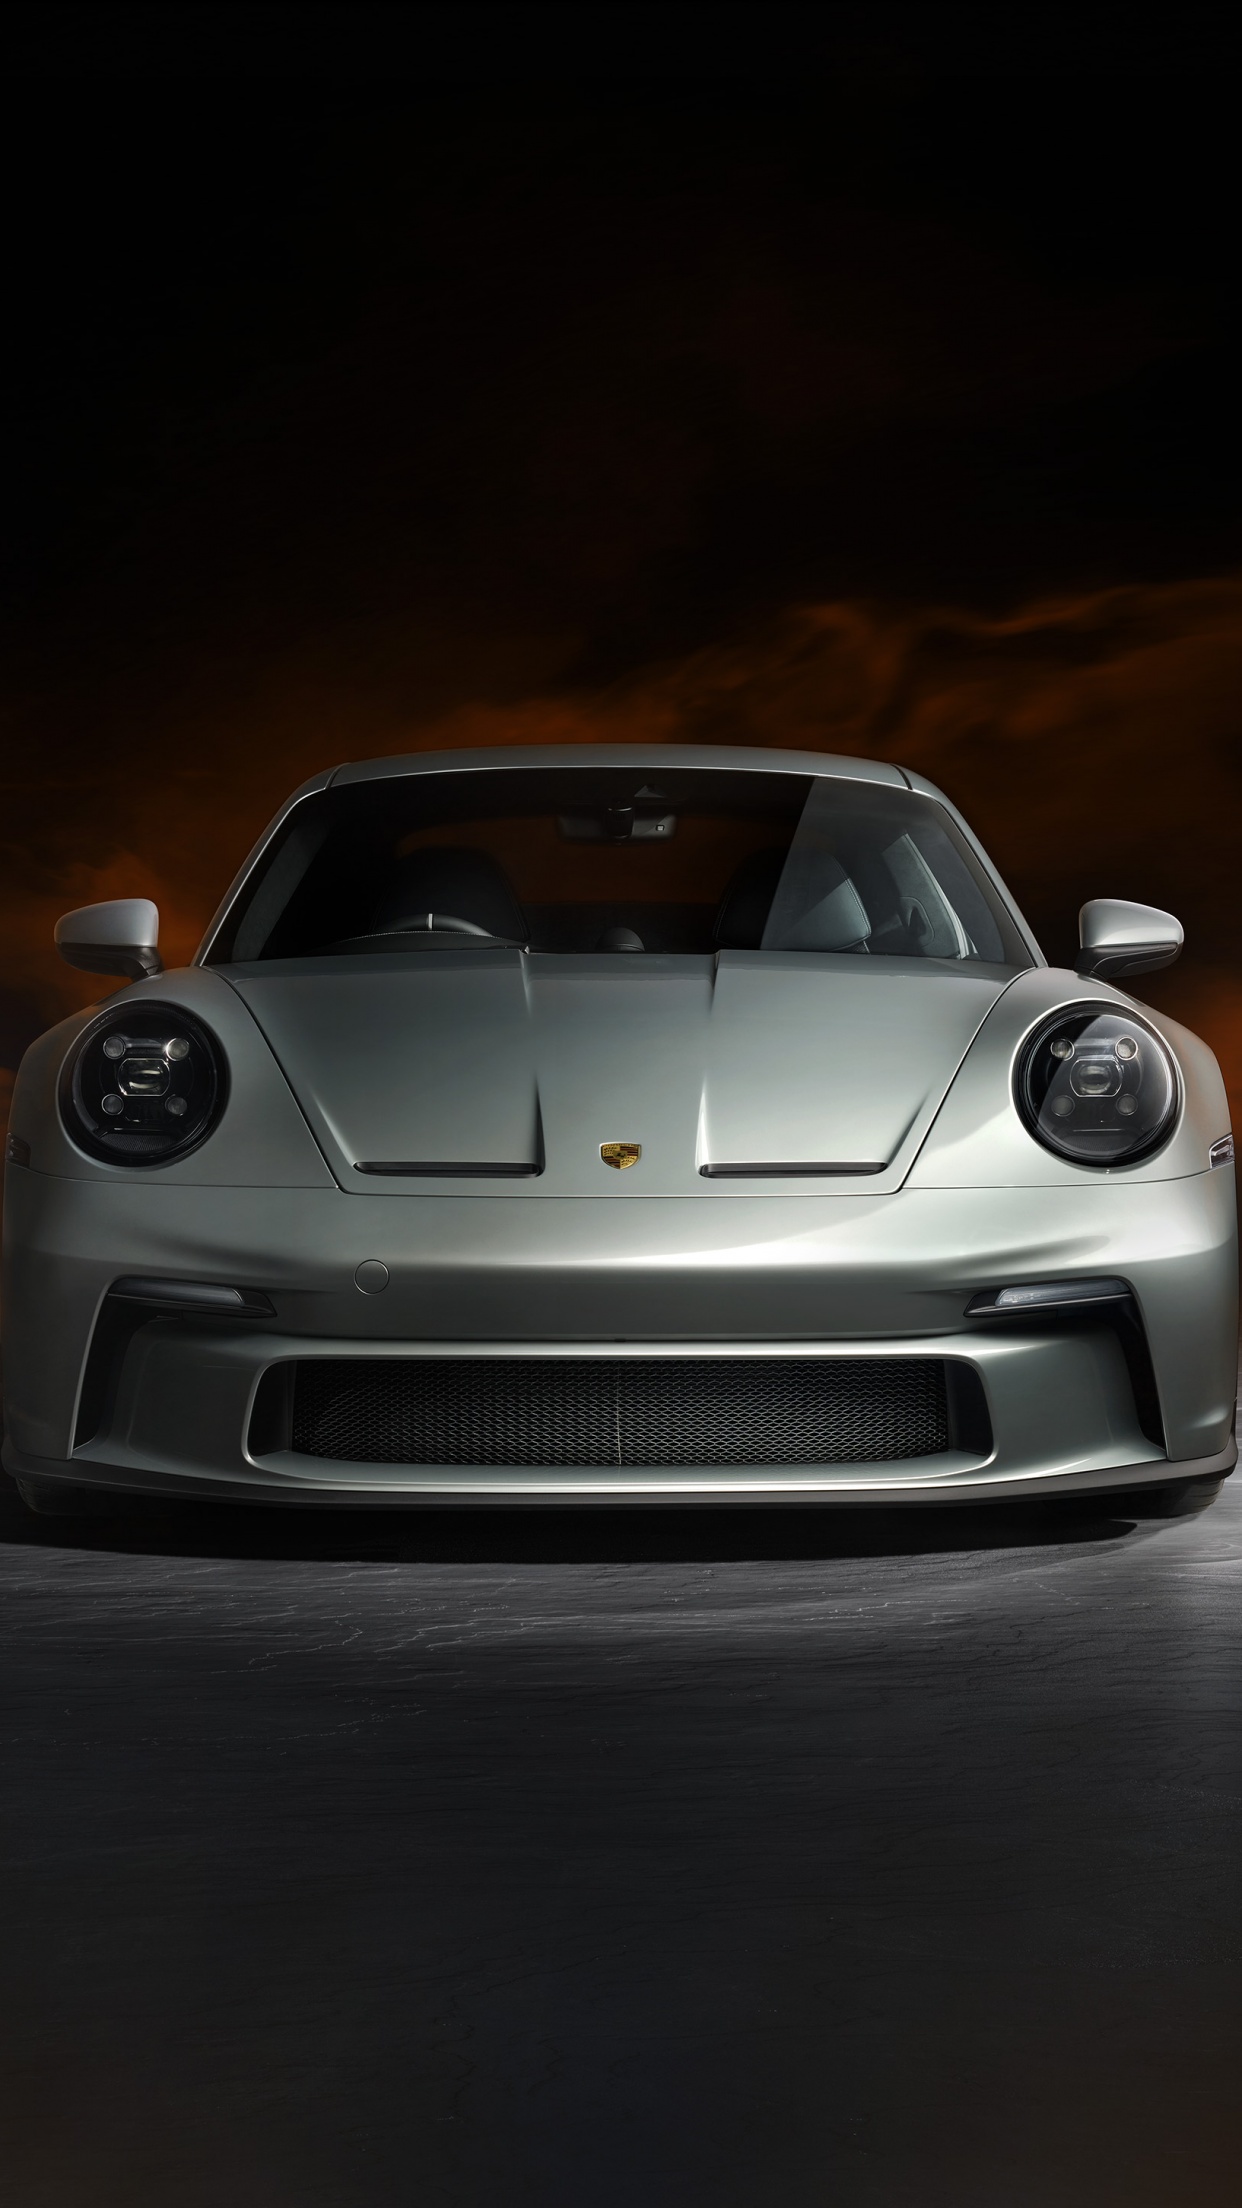 Chiêm ngưỡng chiếc xe thể thao Porsche 911 GT3 với hình nền lung linh nhất. Tận hưởng khung cảnh như trong phim khi bạn mở màn hình điện thoại của mình và ngắm nhìn chiếc xe đầy mê hoặc này.